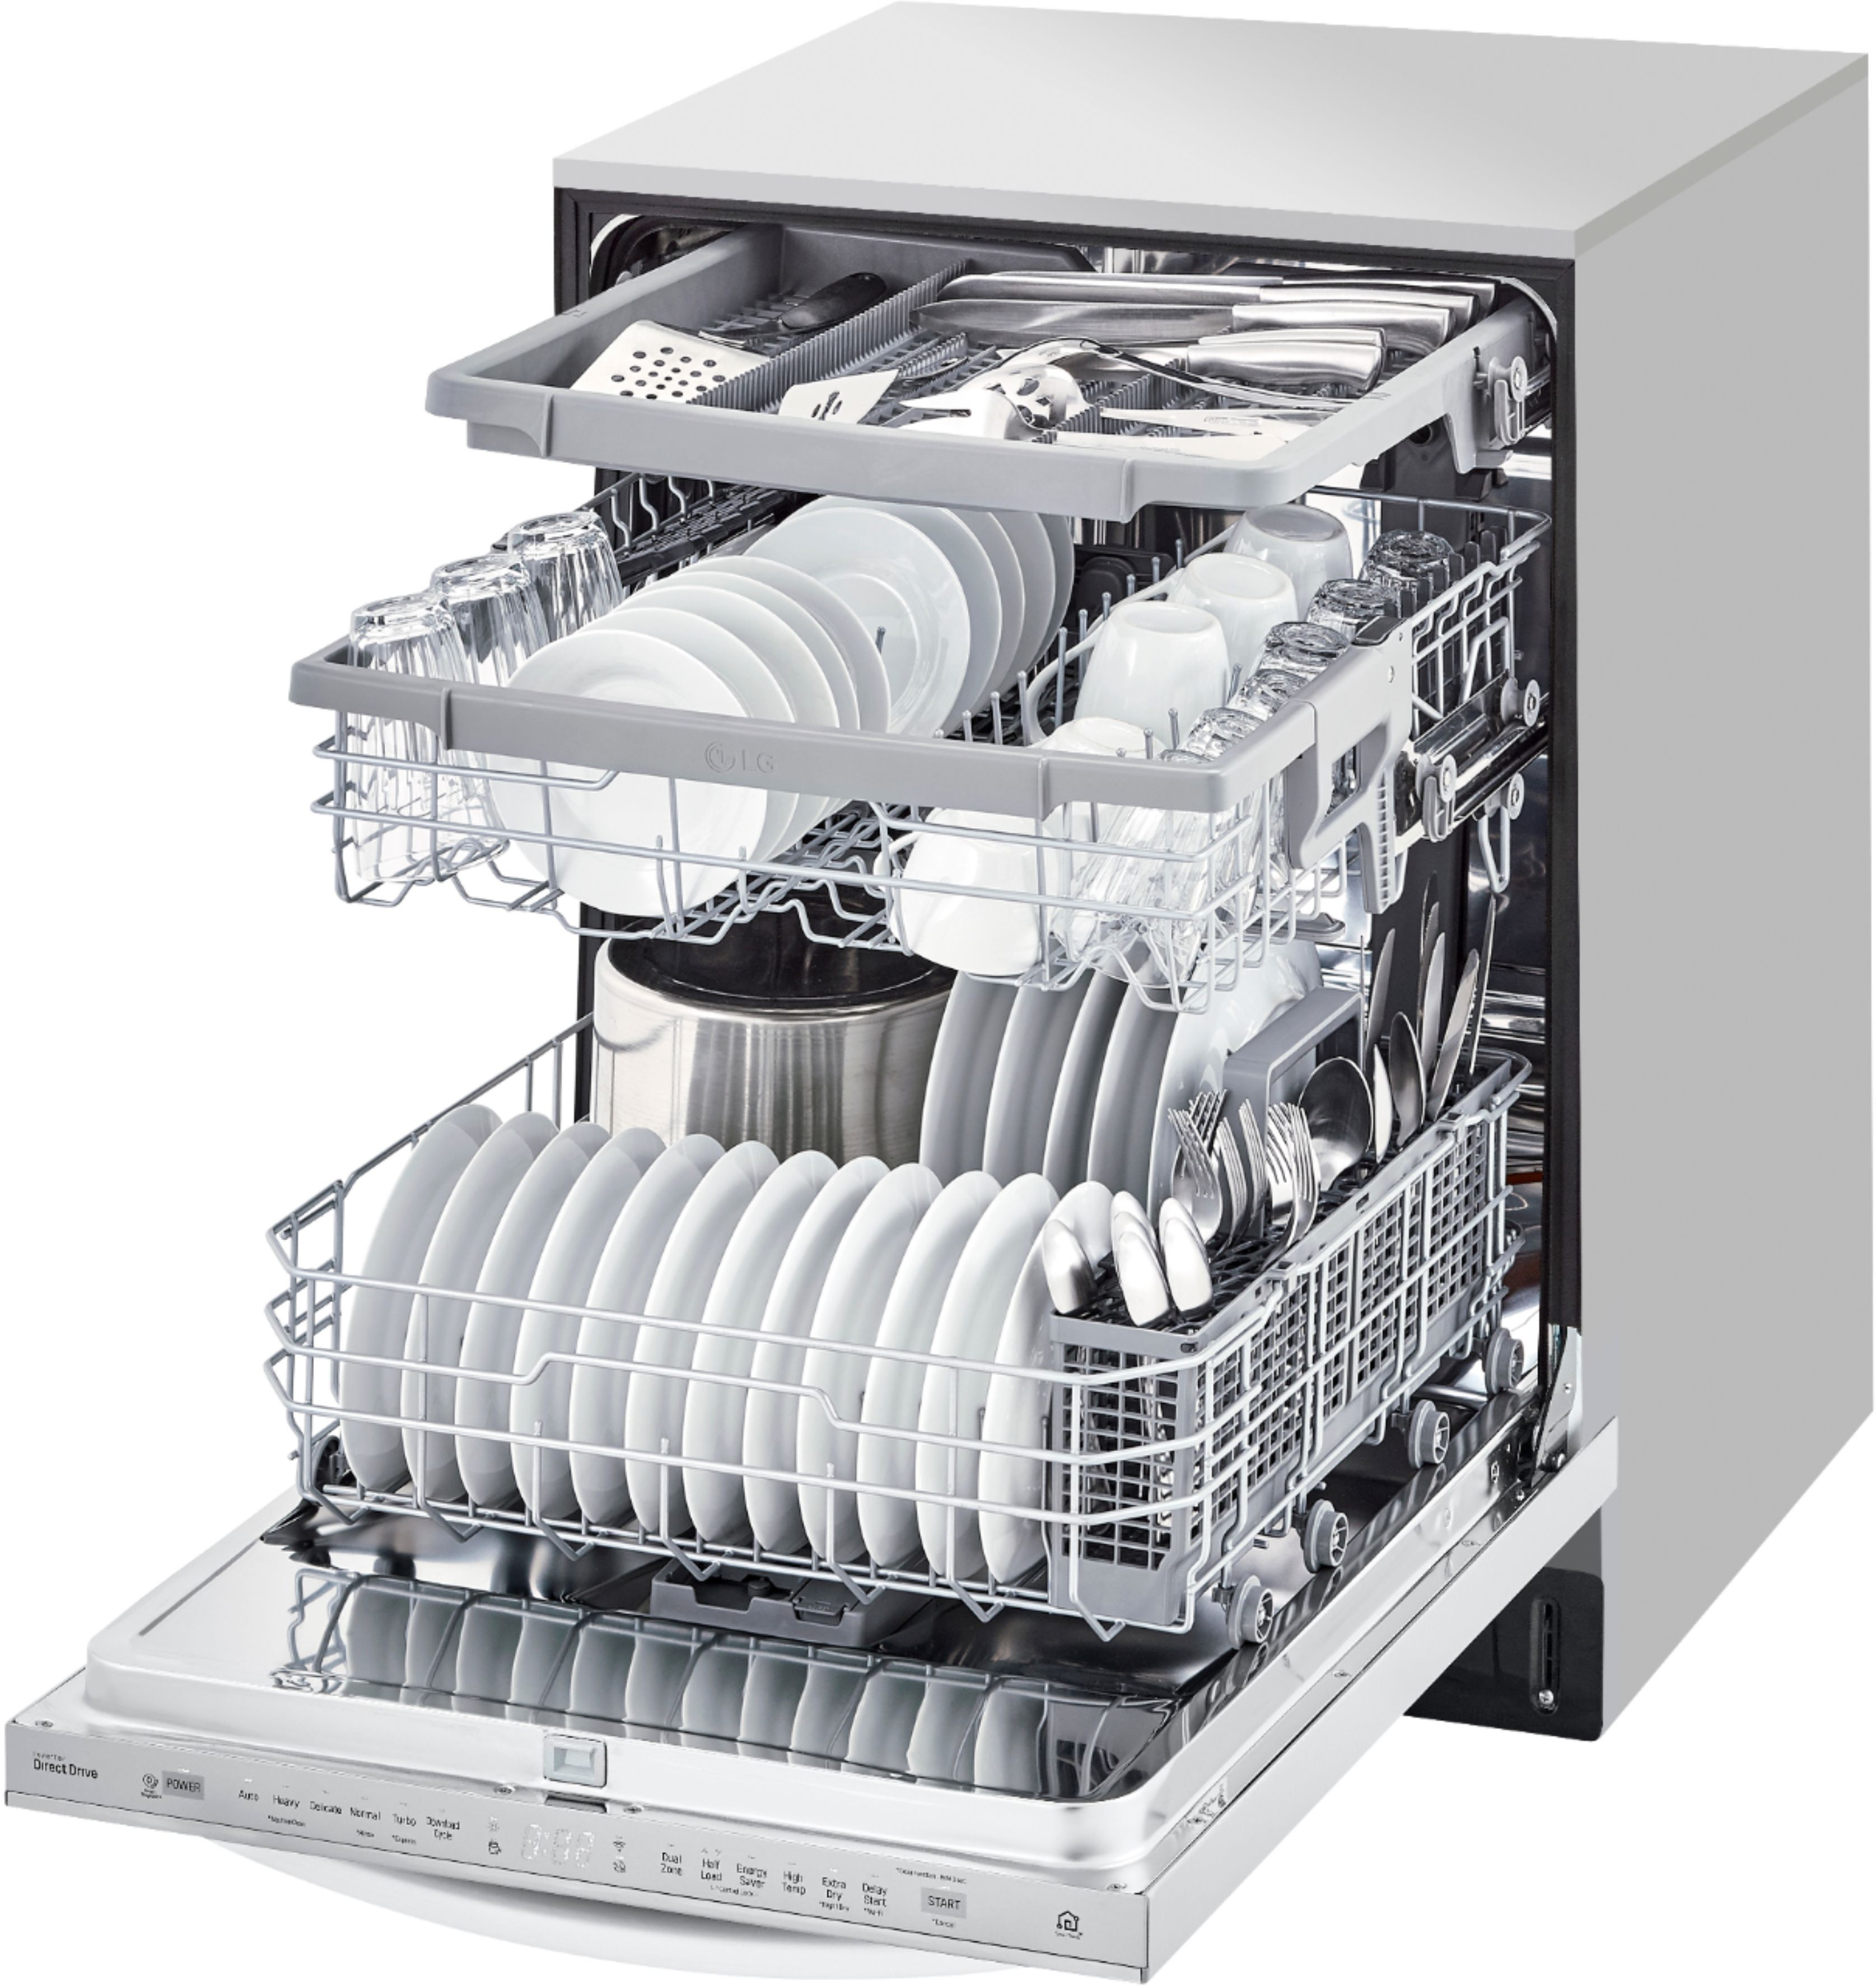 LG Dishwashers  Smart Dishwashers with QuadWash®